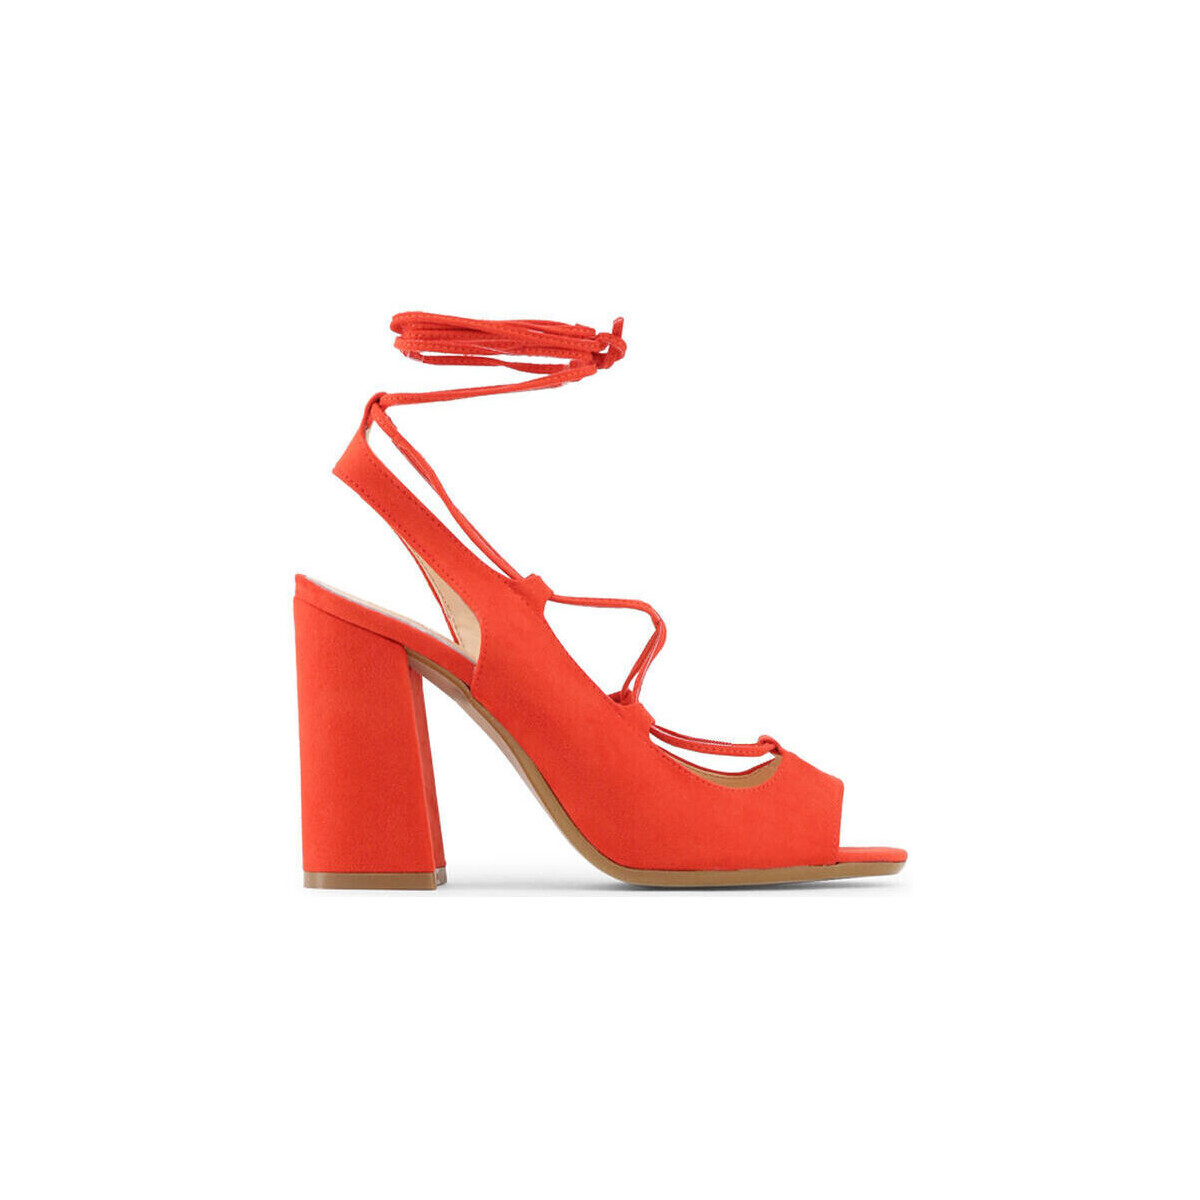 Παπούτσια Γυναίκα Σανδάλια / Πέδιλα Made In Italia - linda Red